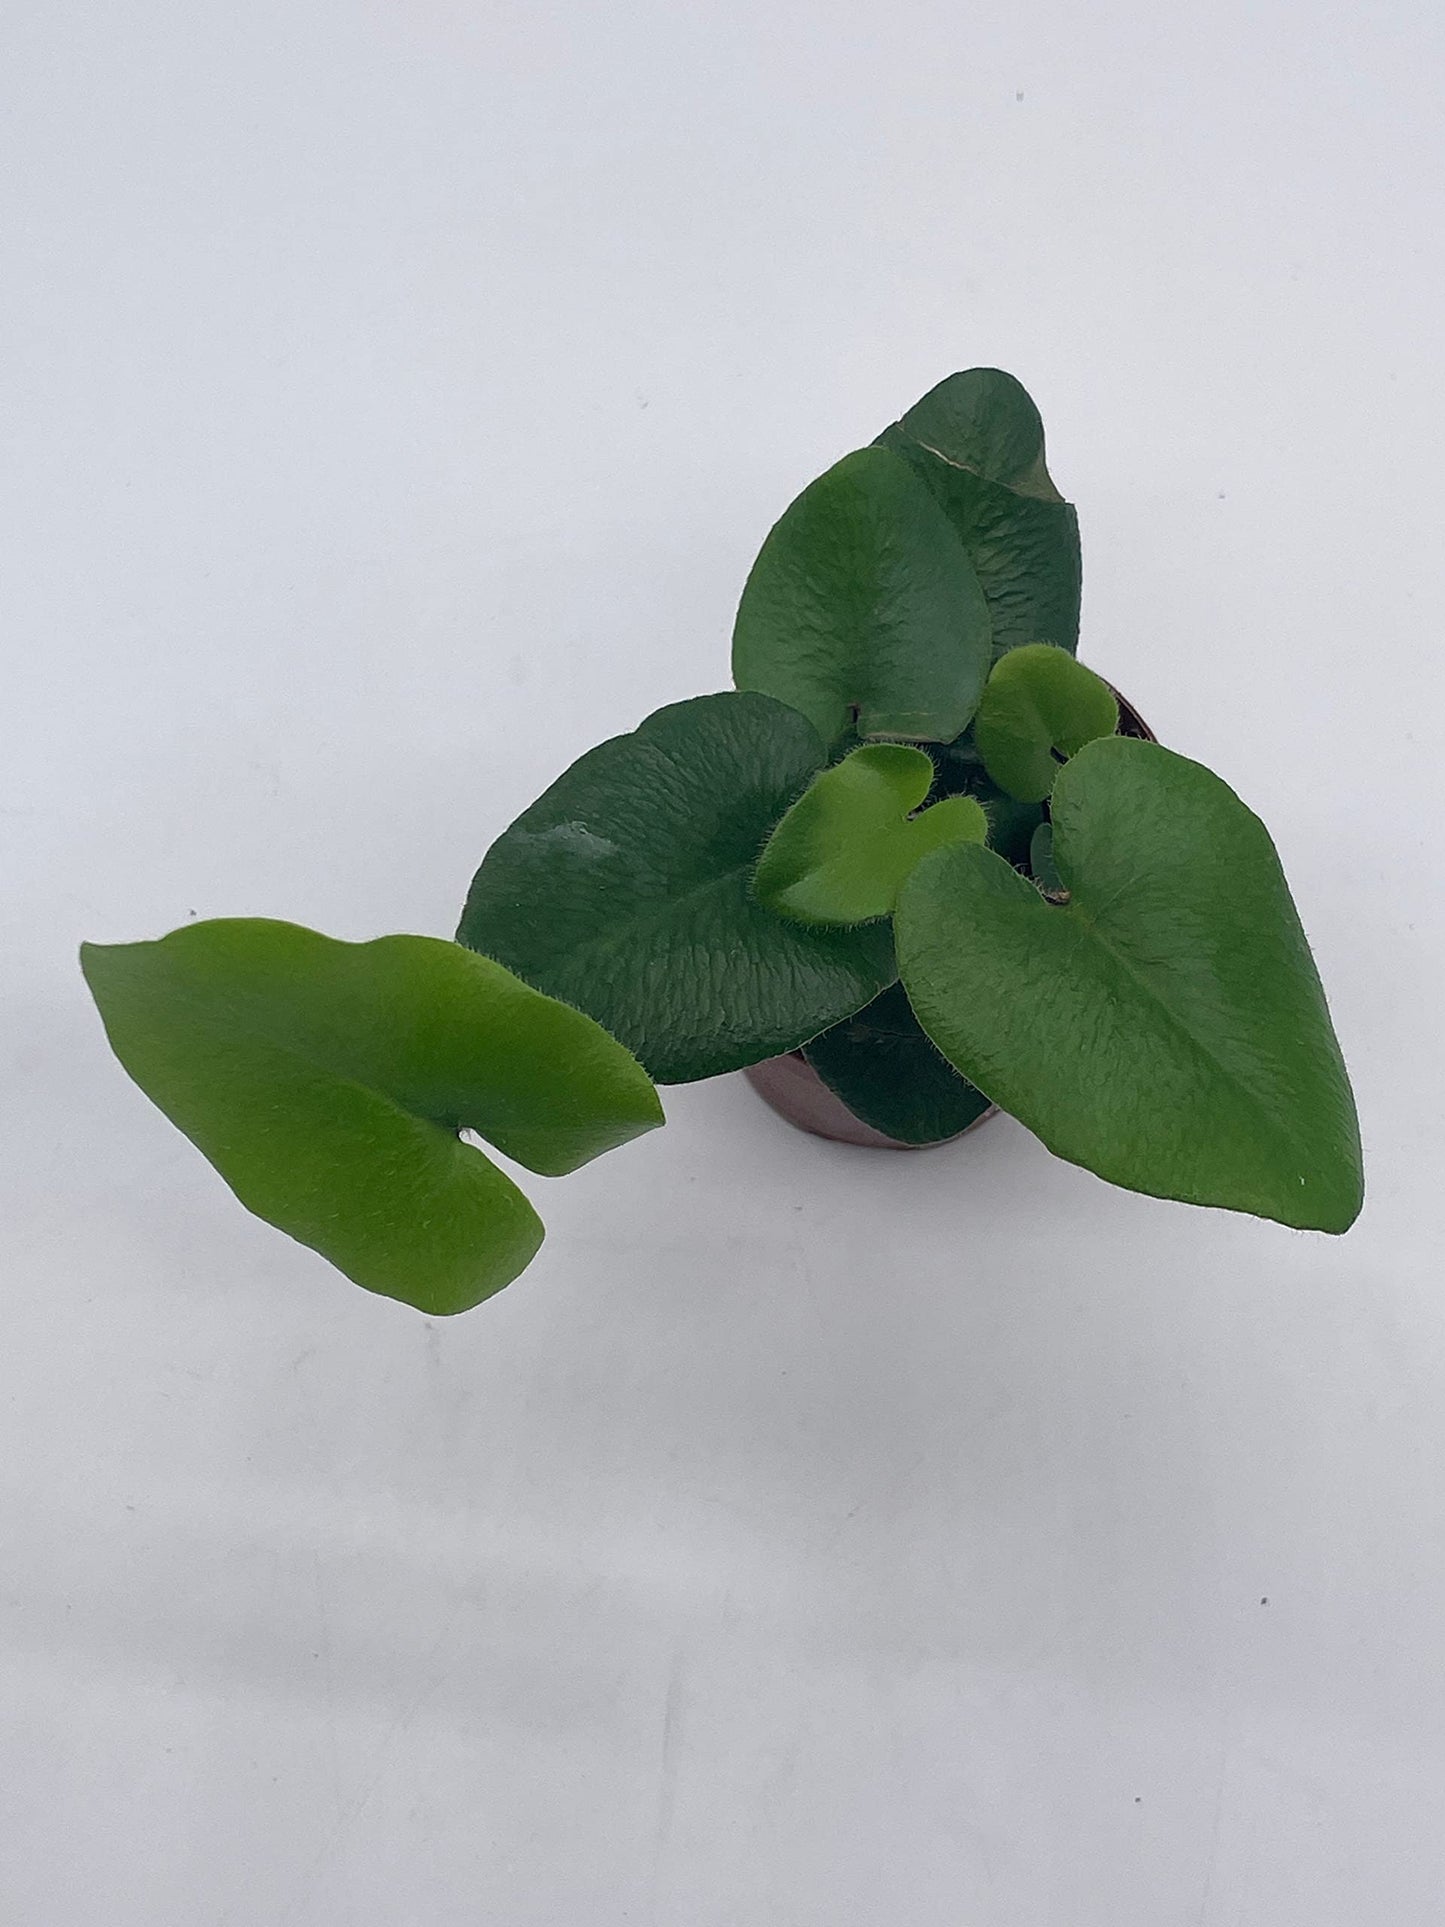 Heart Fern, Hemionitis arifolia, Heart Shaped Leaves, Tongue Fern in 2 inch Pot